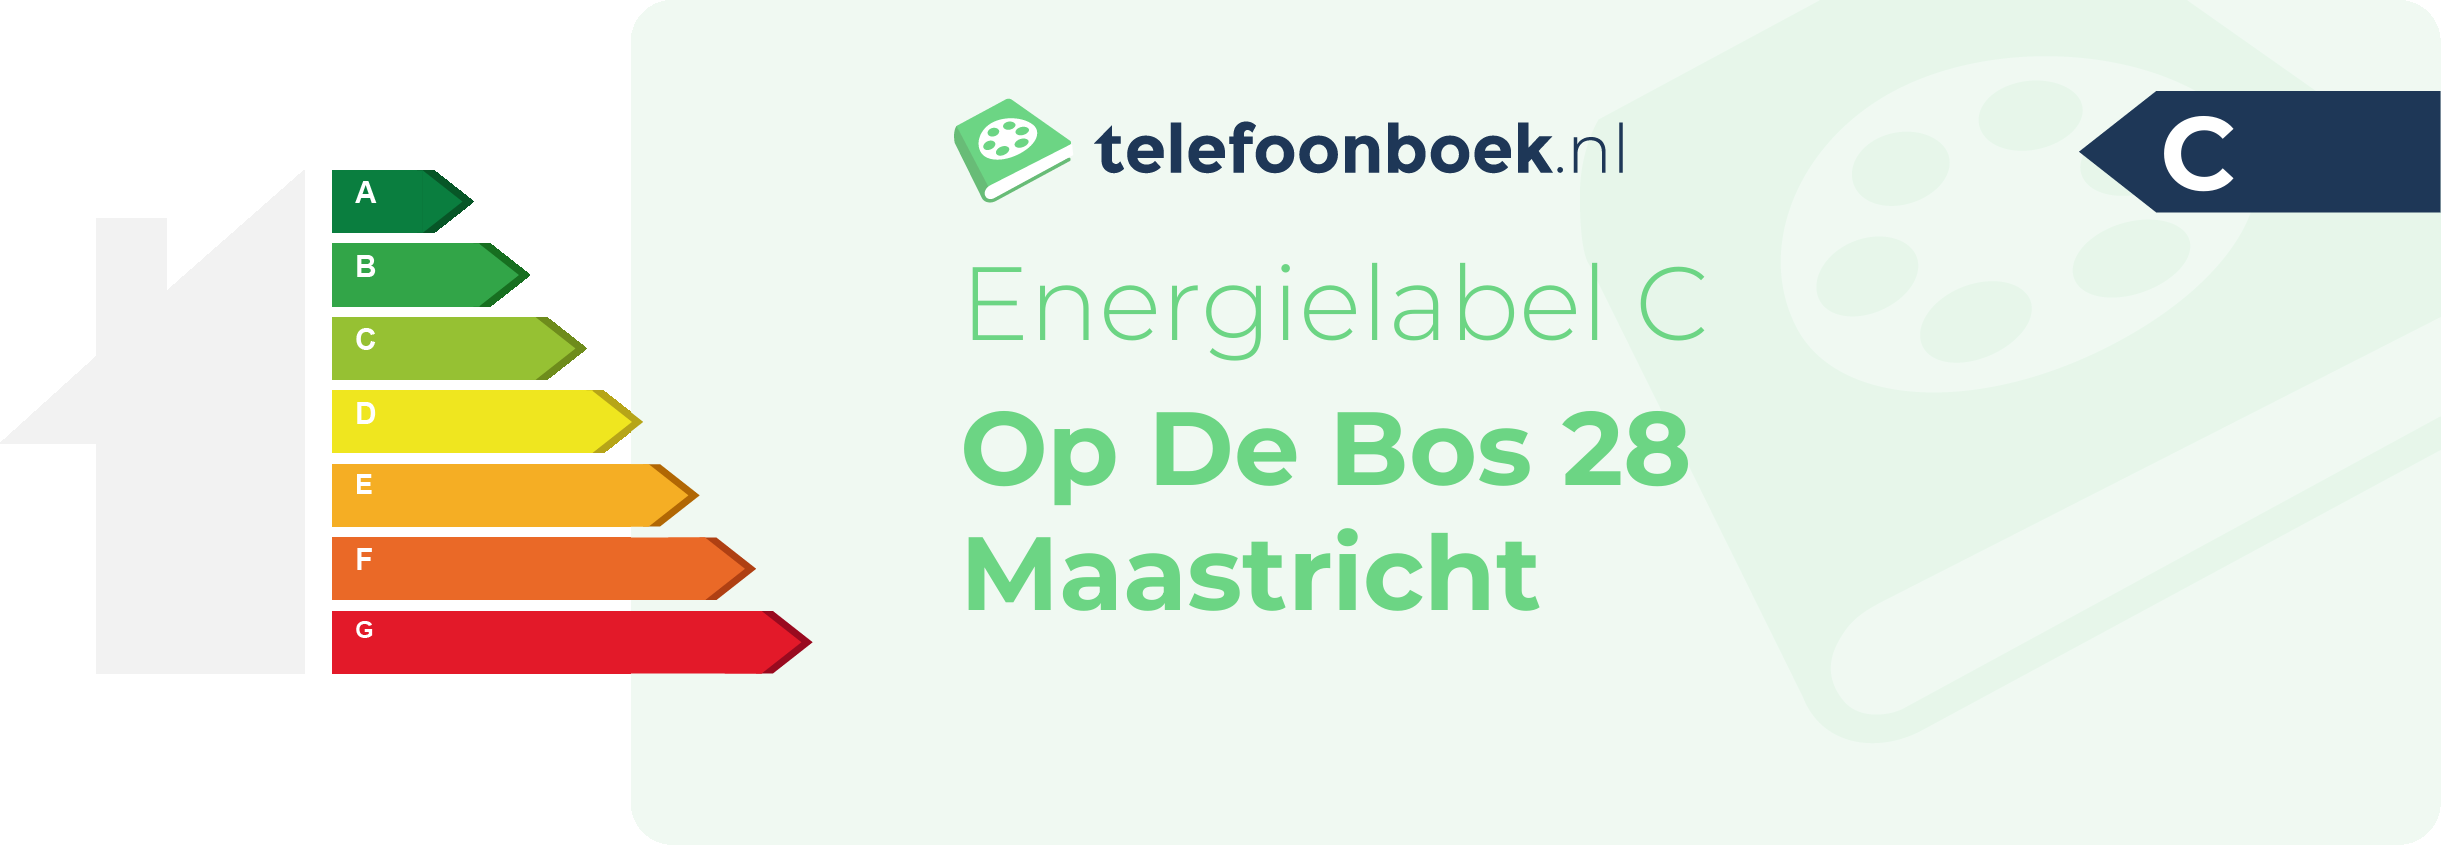 Energielabel Op De Bos 28 Maastricht